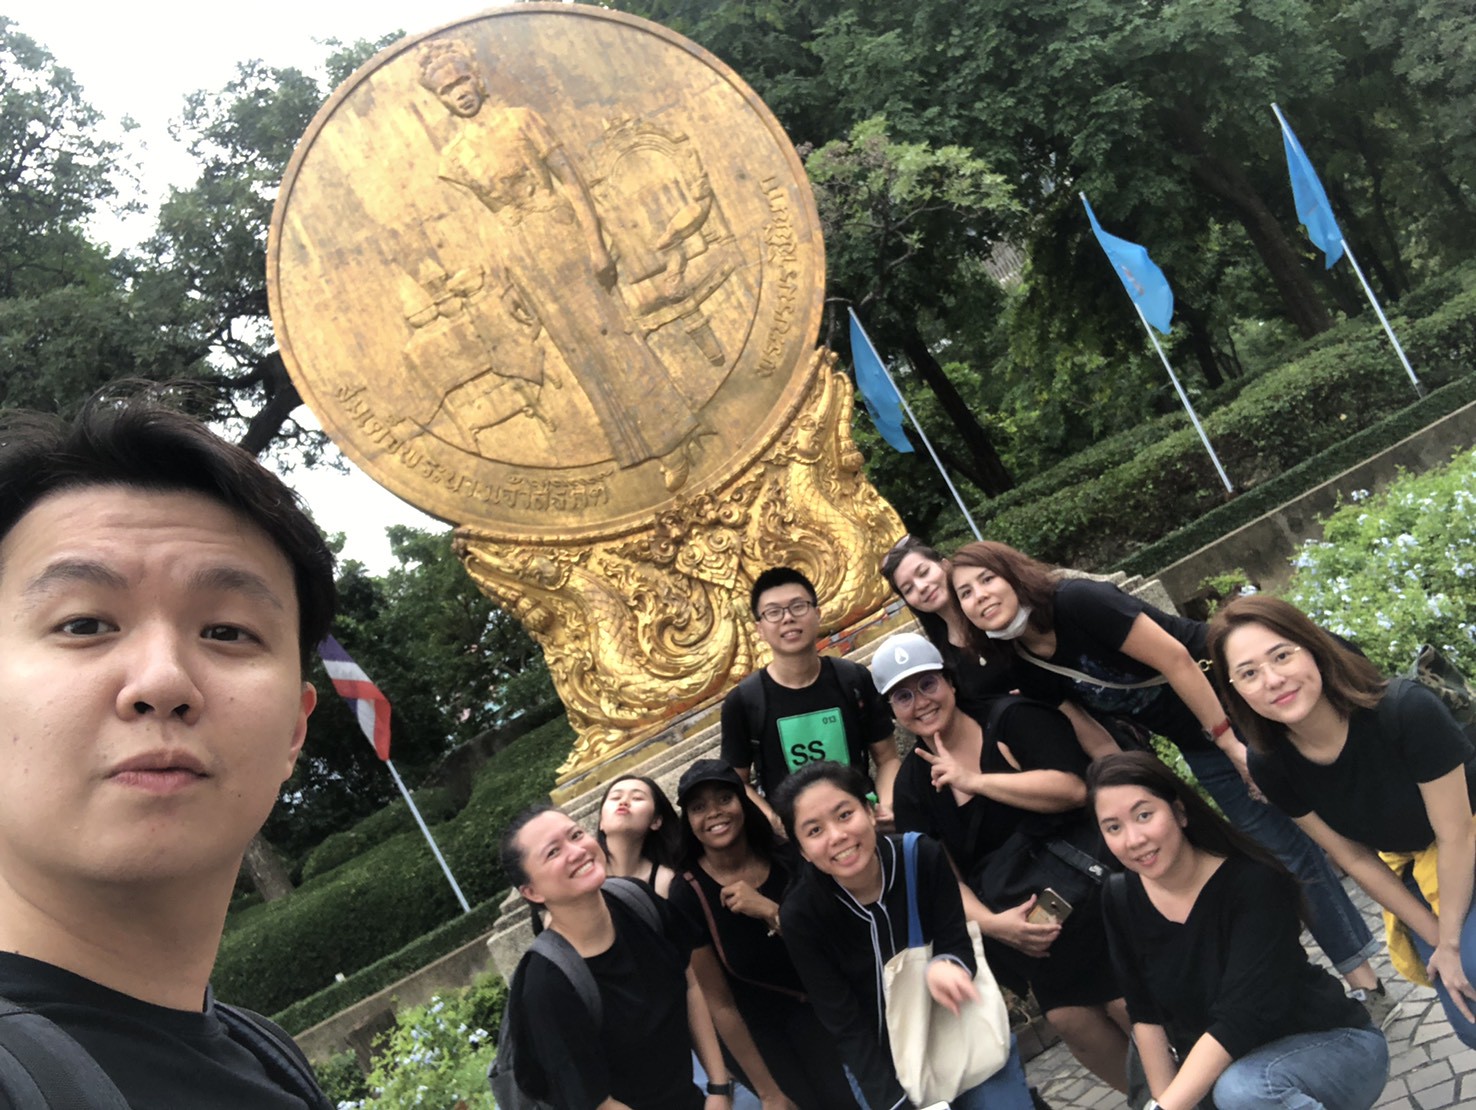 Anantara Team Building - The Treasure Hunt - December 2019 - Bangkok